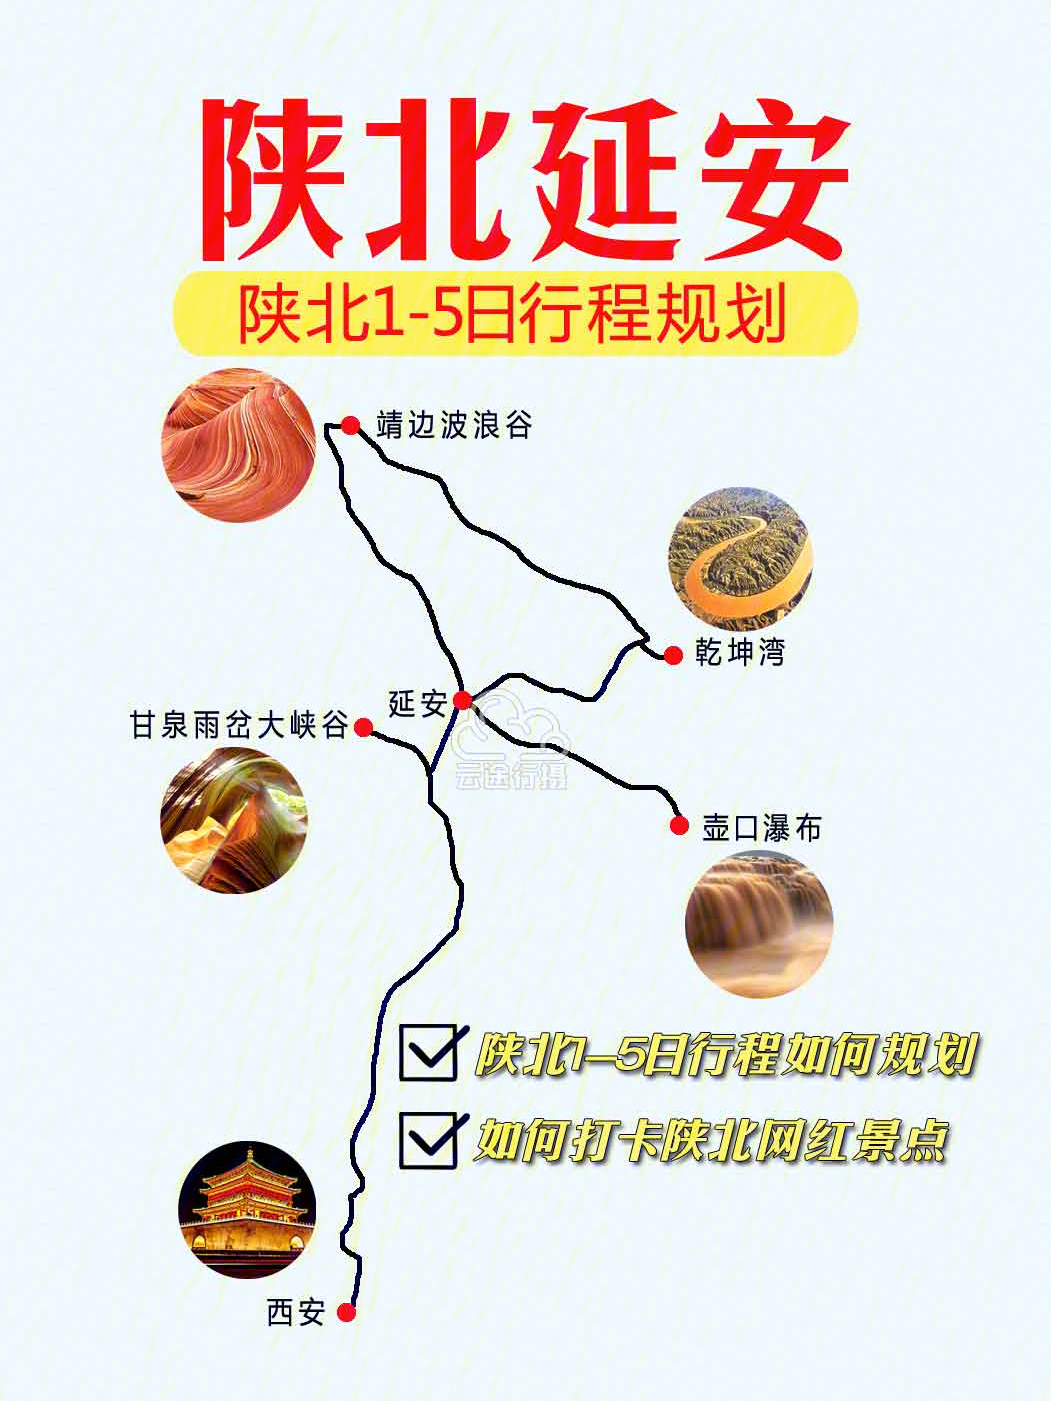 陕北15日旅游攻略陕北延安周边游线路地图